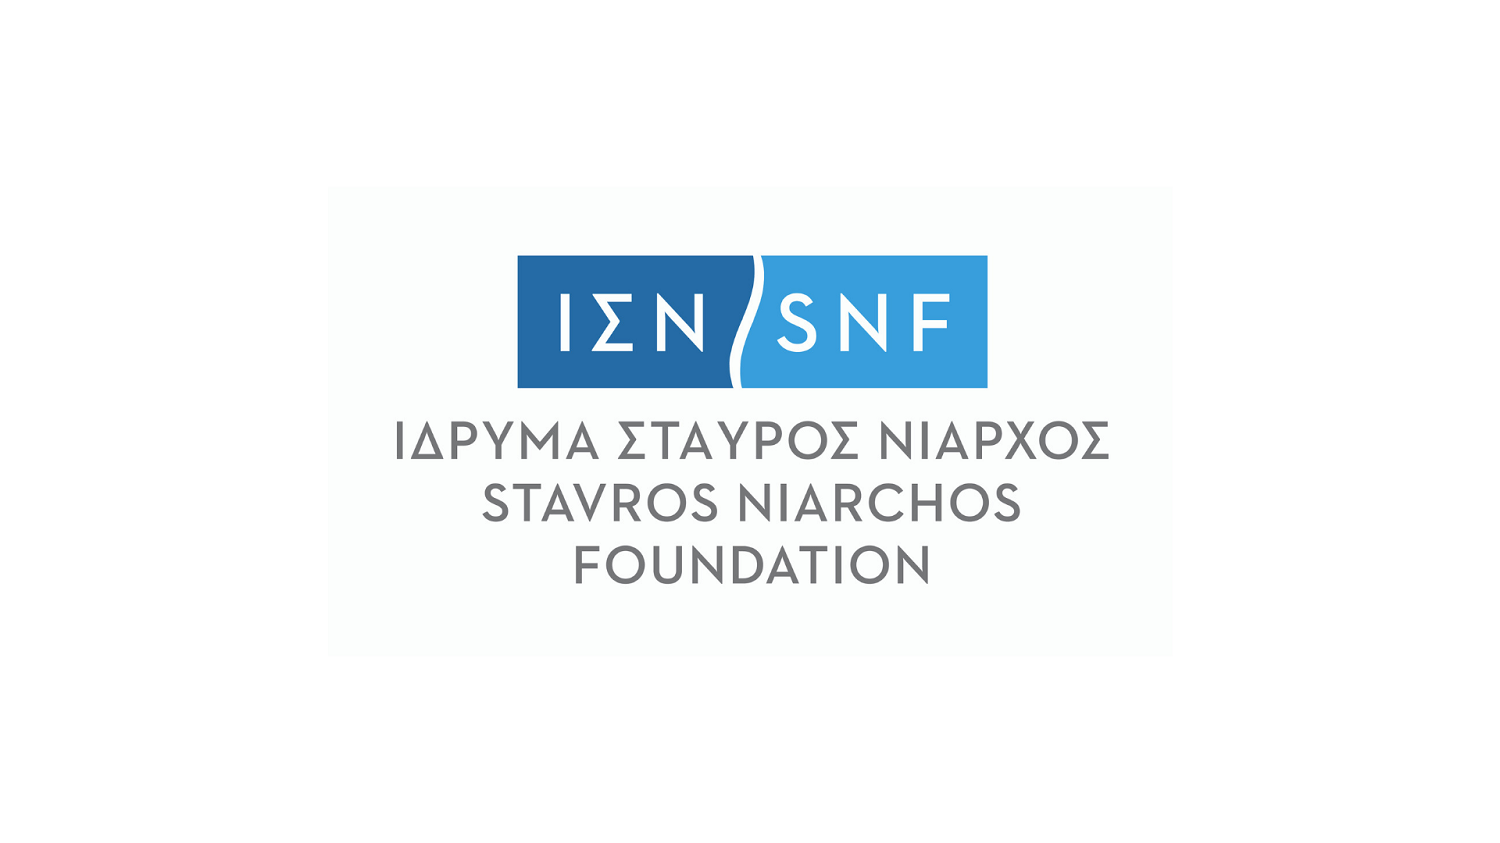 Το Ίδρυμα Νιάρχος ανακαλεί δωρεά προς την Ιστιοπλοϊκή Ομοσπονδία λόγω της υπόθεσης Μπεκατώρου